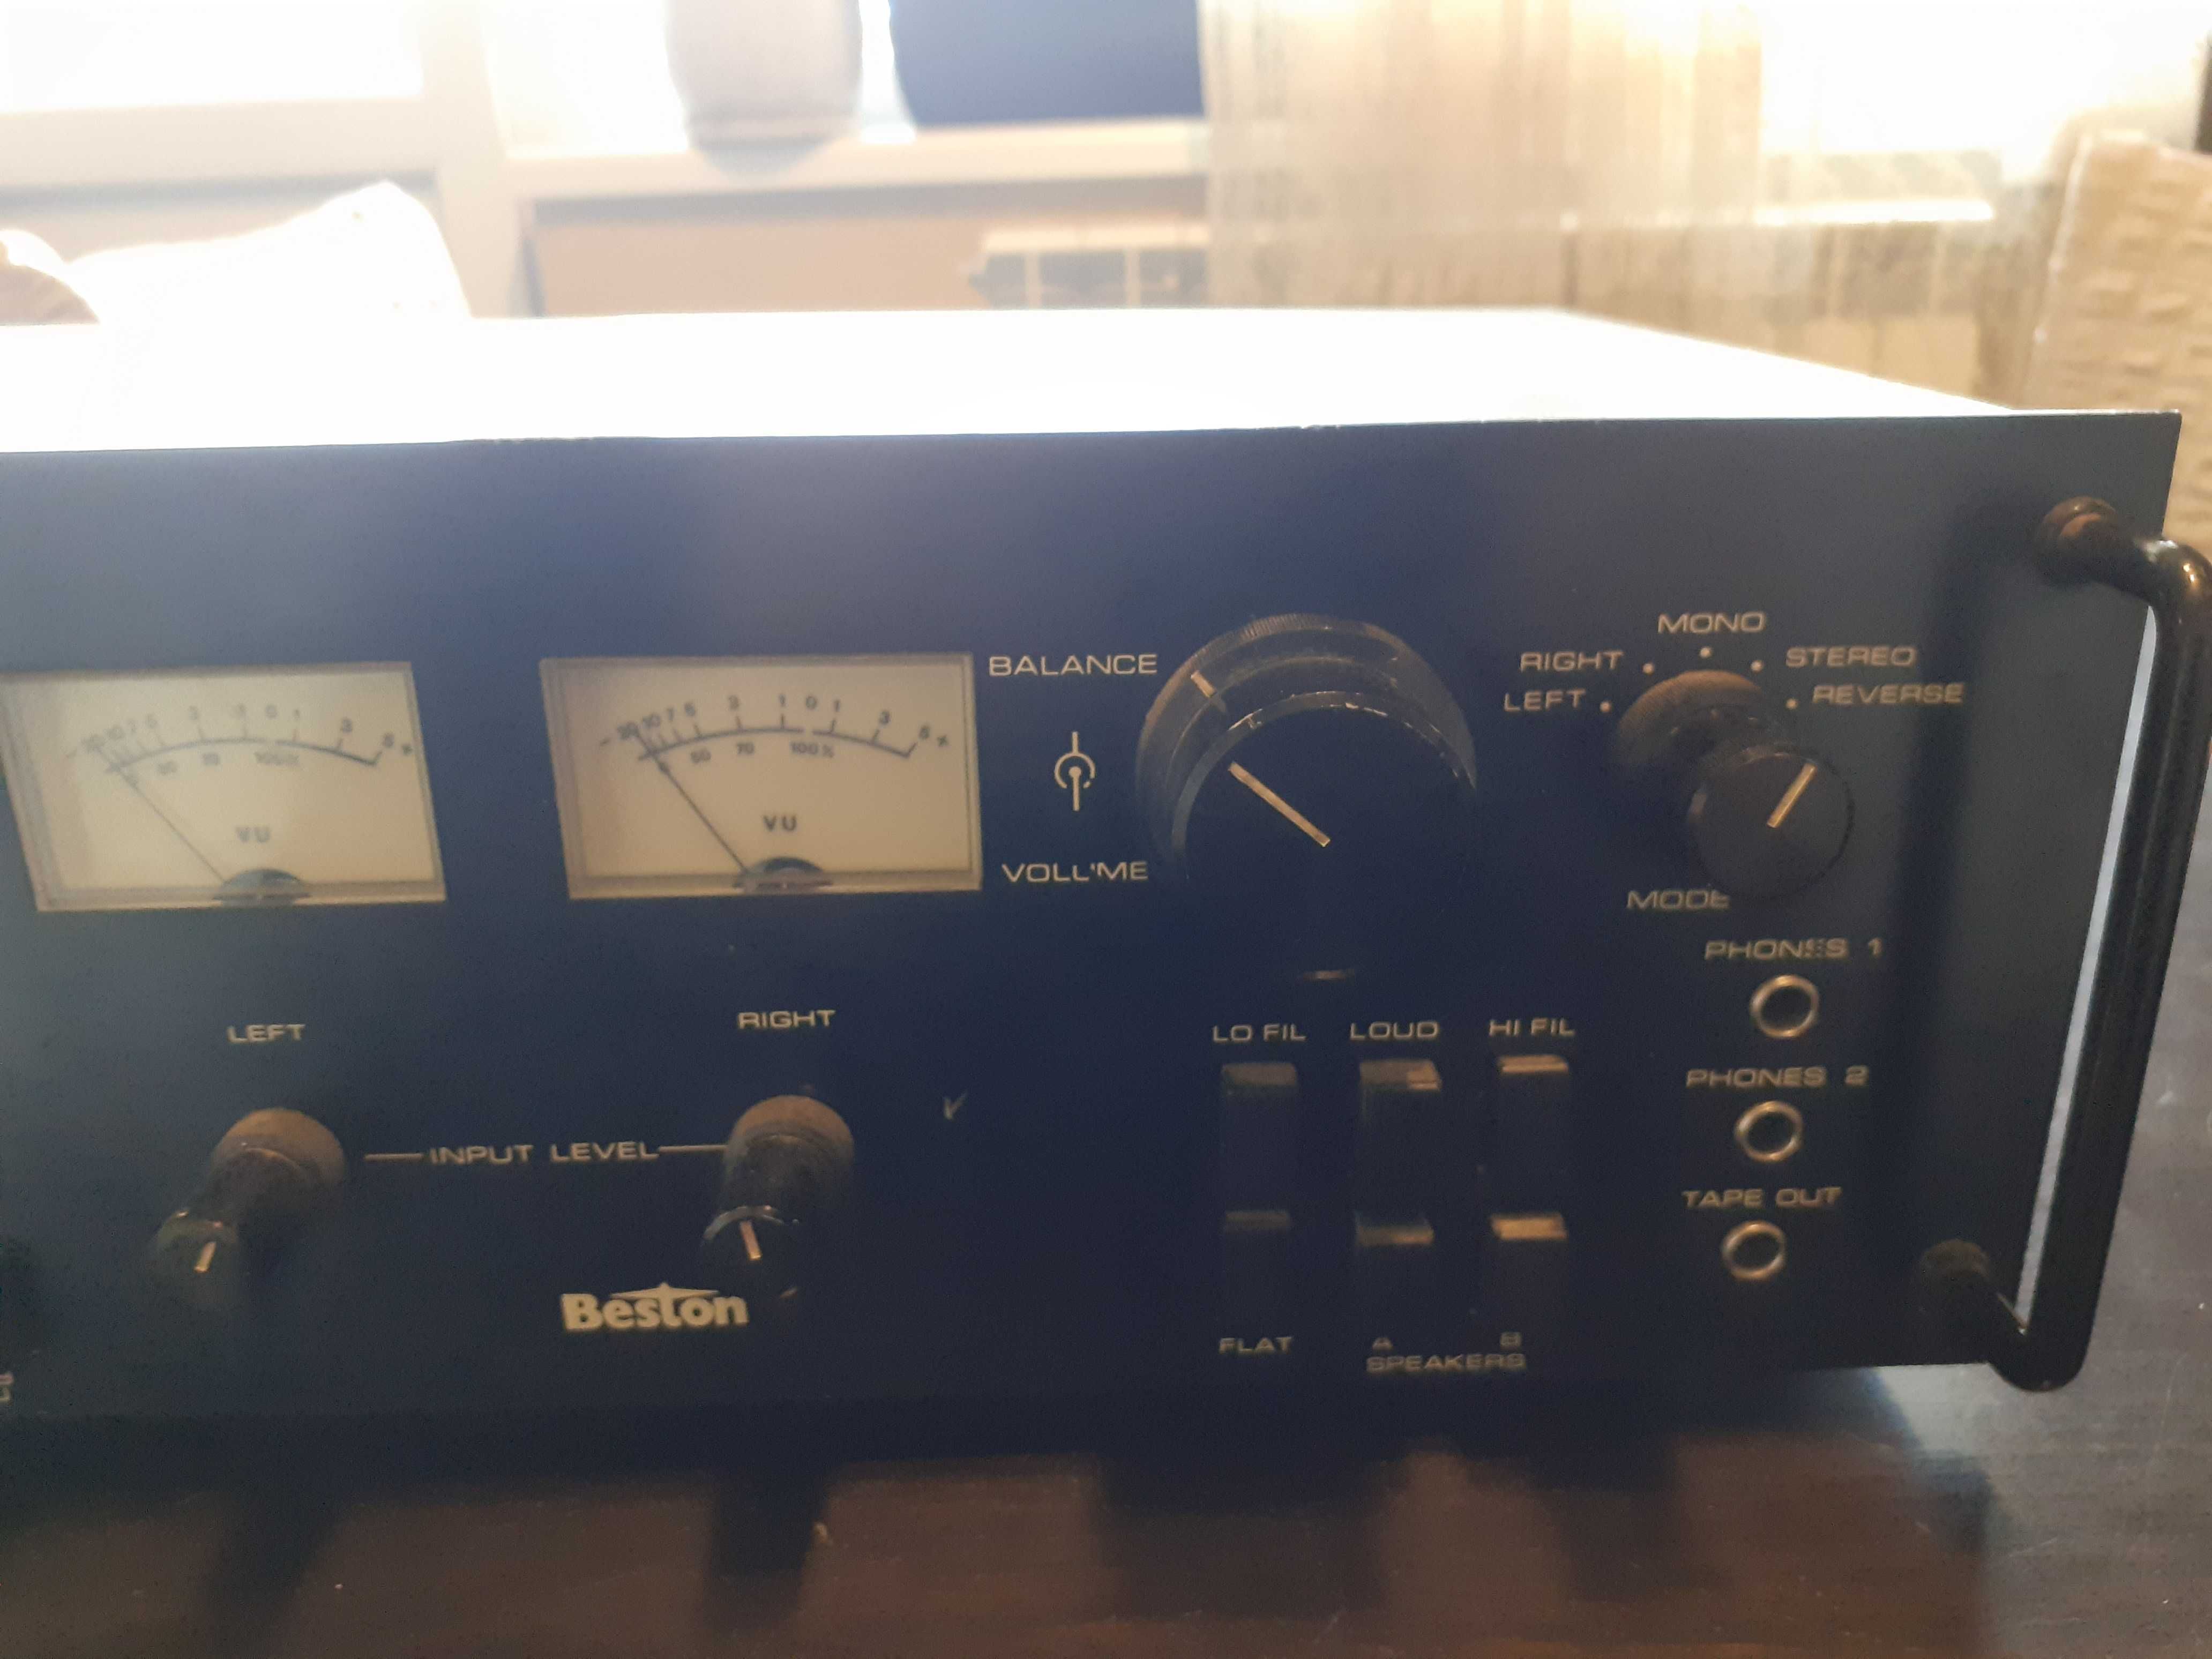 Beston v-1150 stereo amplifier